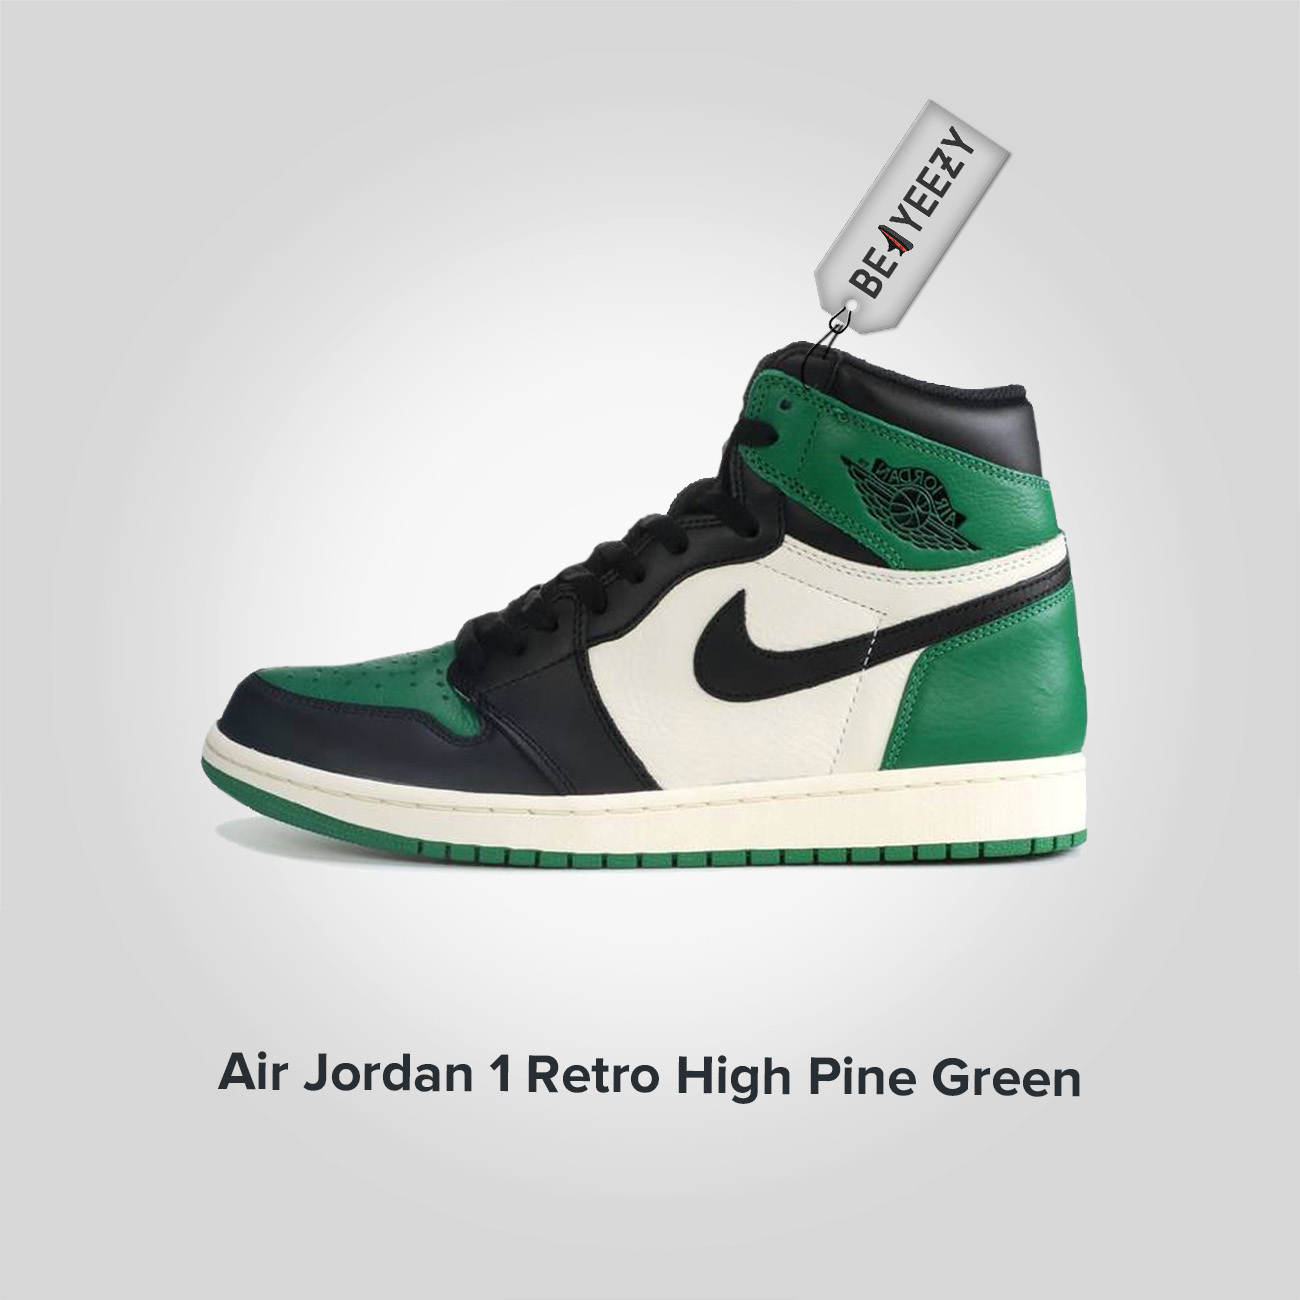 Jordan 1 Retro High Pine Green